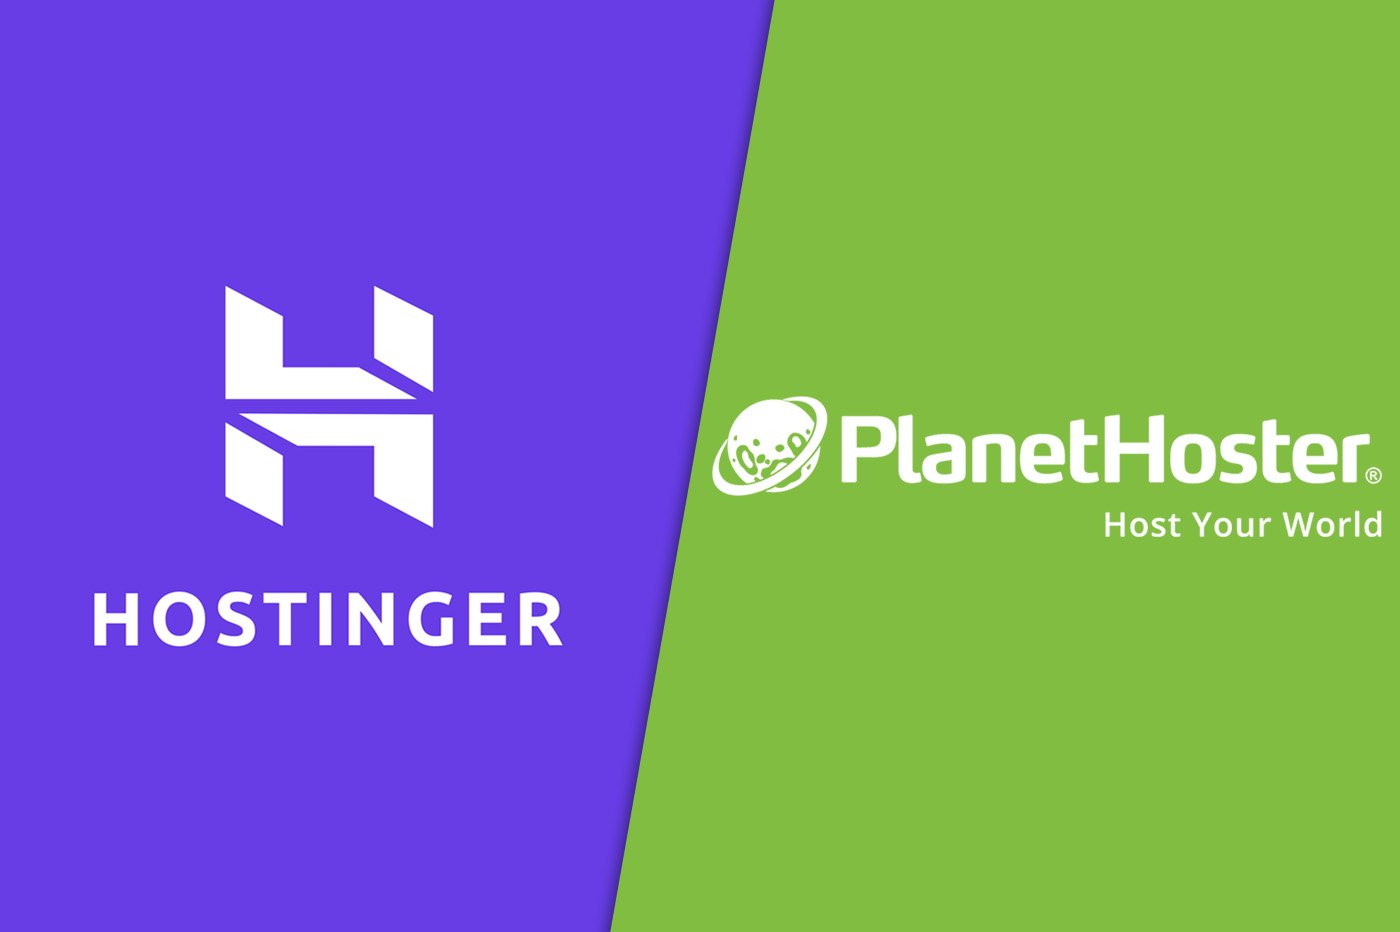 Hostinger vs PlanetHoster